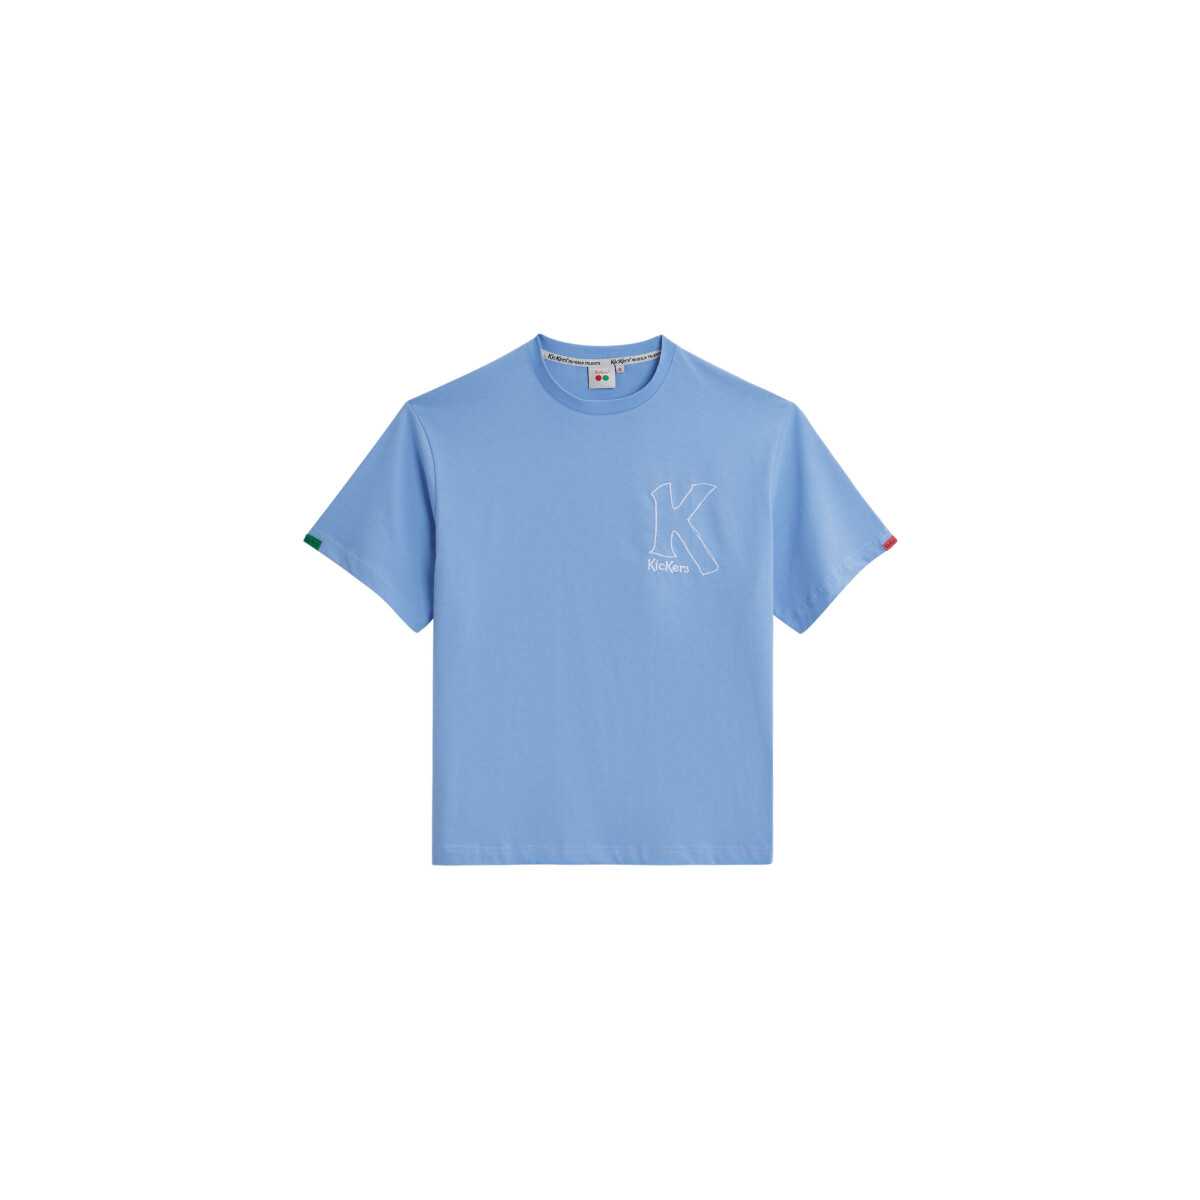 Textil T-shirts e Pólos Kickers Big K T-shirt Azul